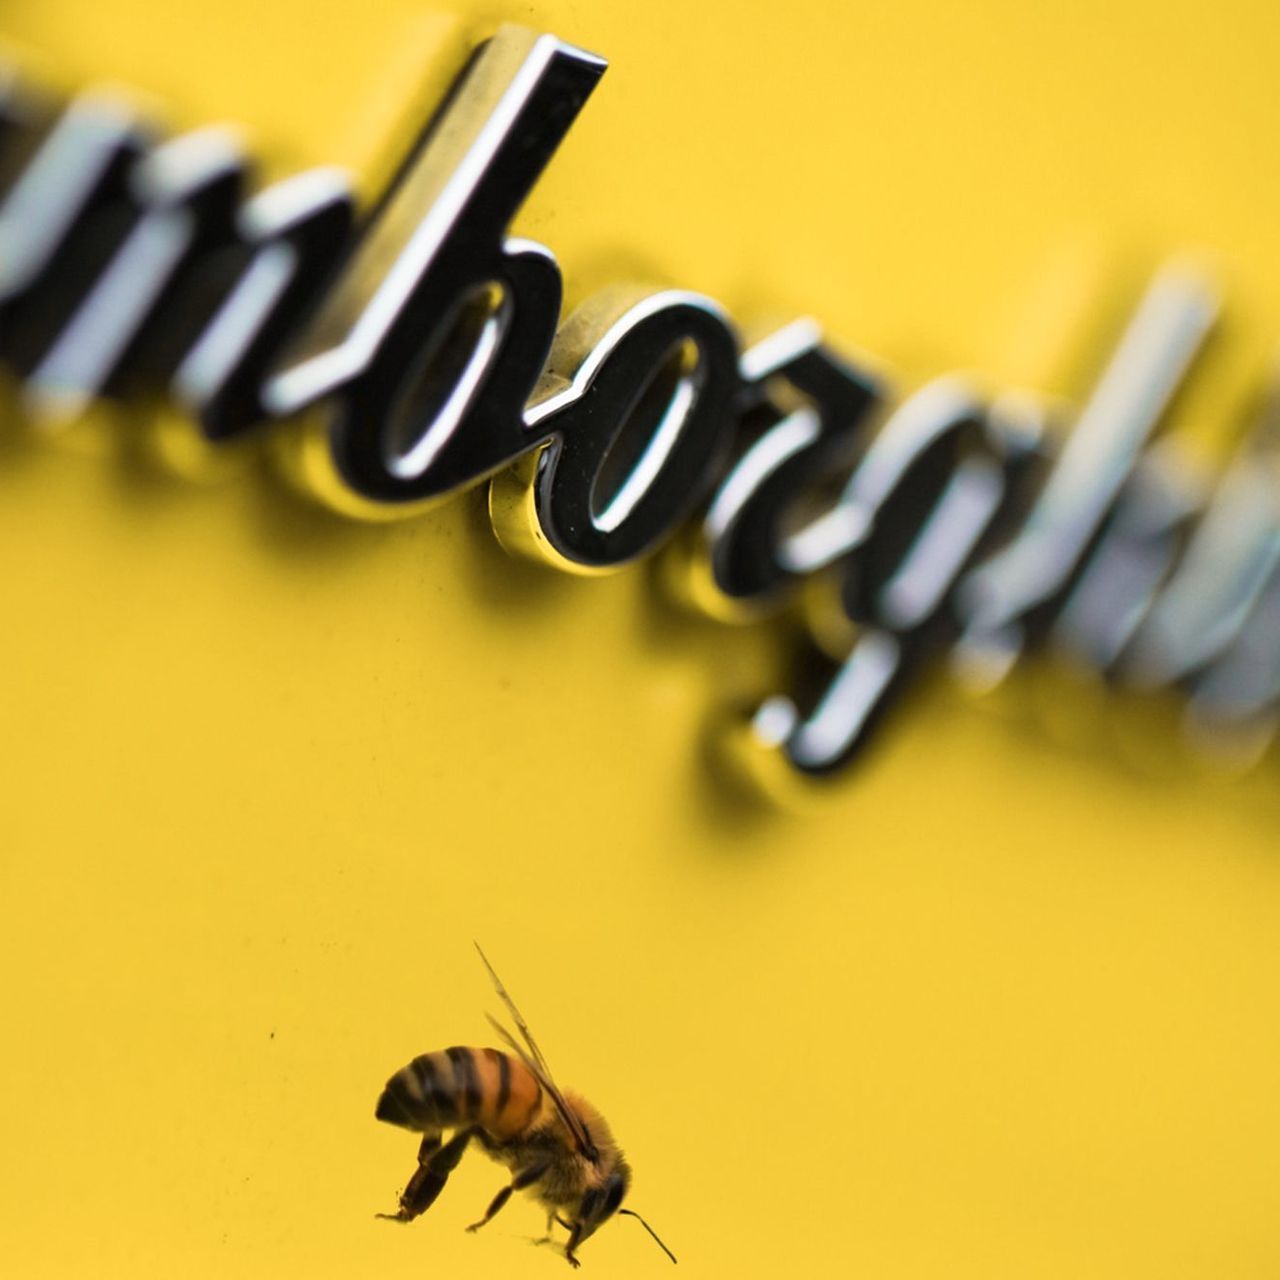 Un’ape accanto alla scritta stilizzata tipica delle supercar made-by-Lamborghini